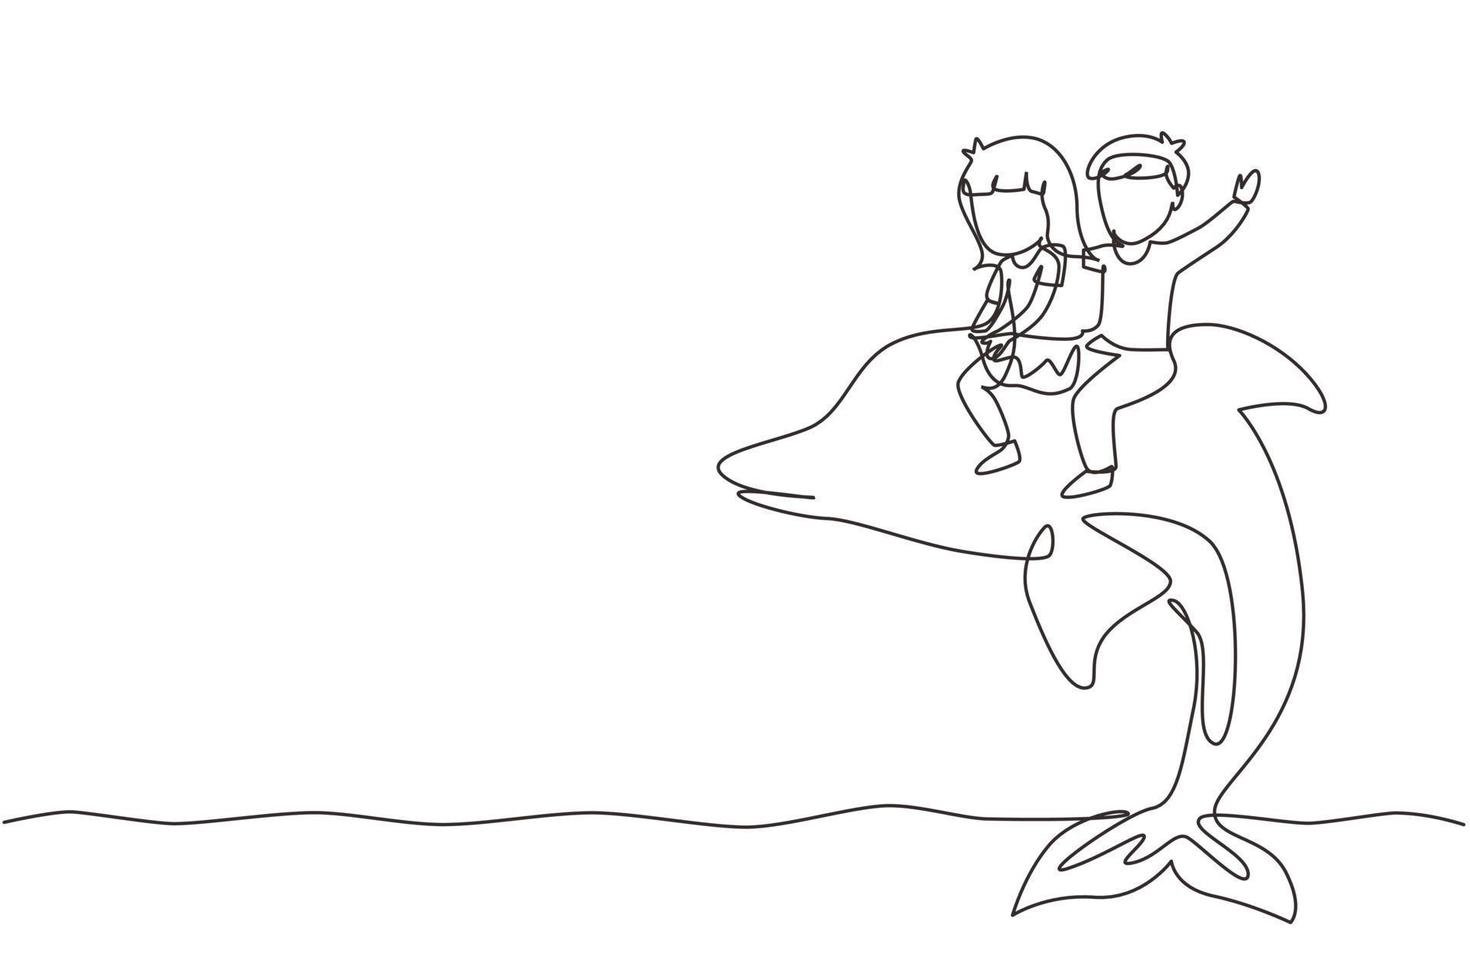 einzelne eine Linie, die kleine Jungen und Mädchen zeichnet, die zusammen Delphin reiten. Kinder sitzen auf dem Delfin im Schwimmbad. Kinder mit Delfinen schwimmen im Wasser. Design-Grafikvektor mit kontinuierlicher Linie vektor